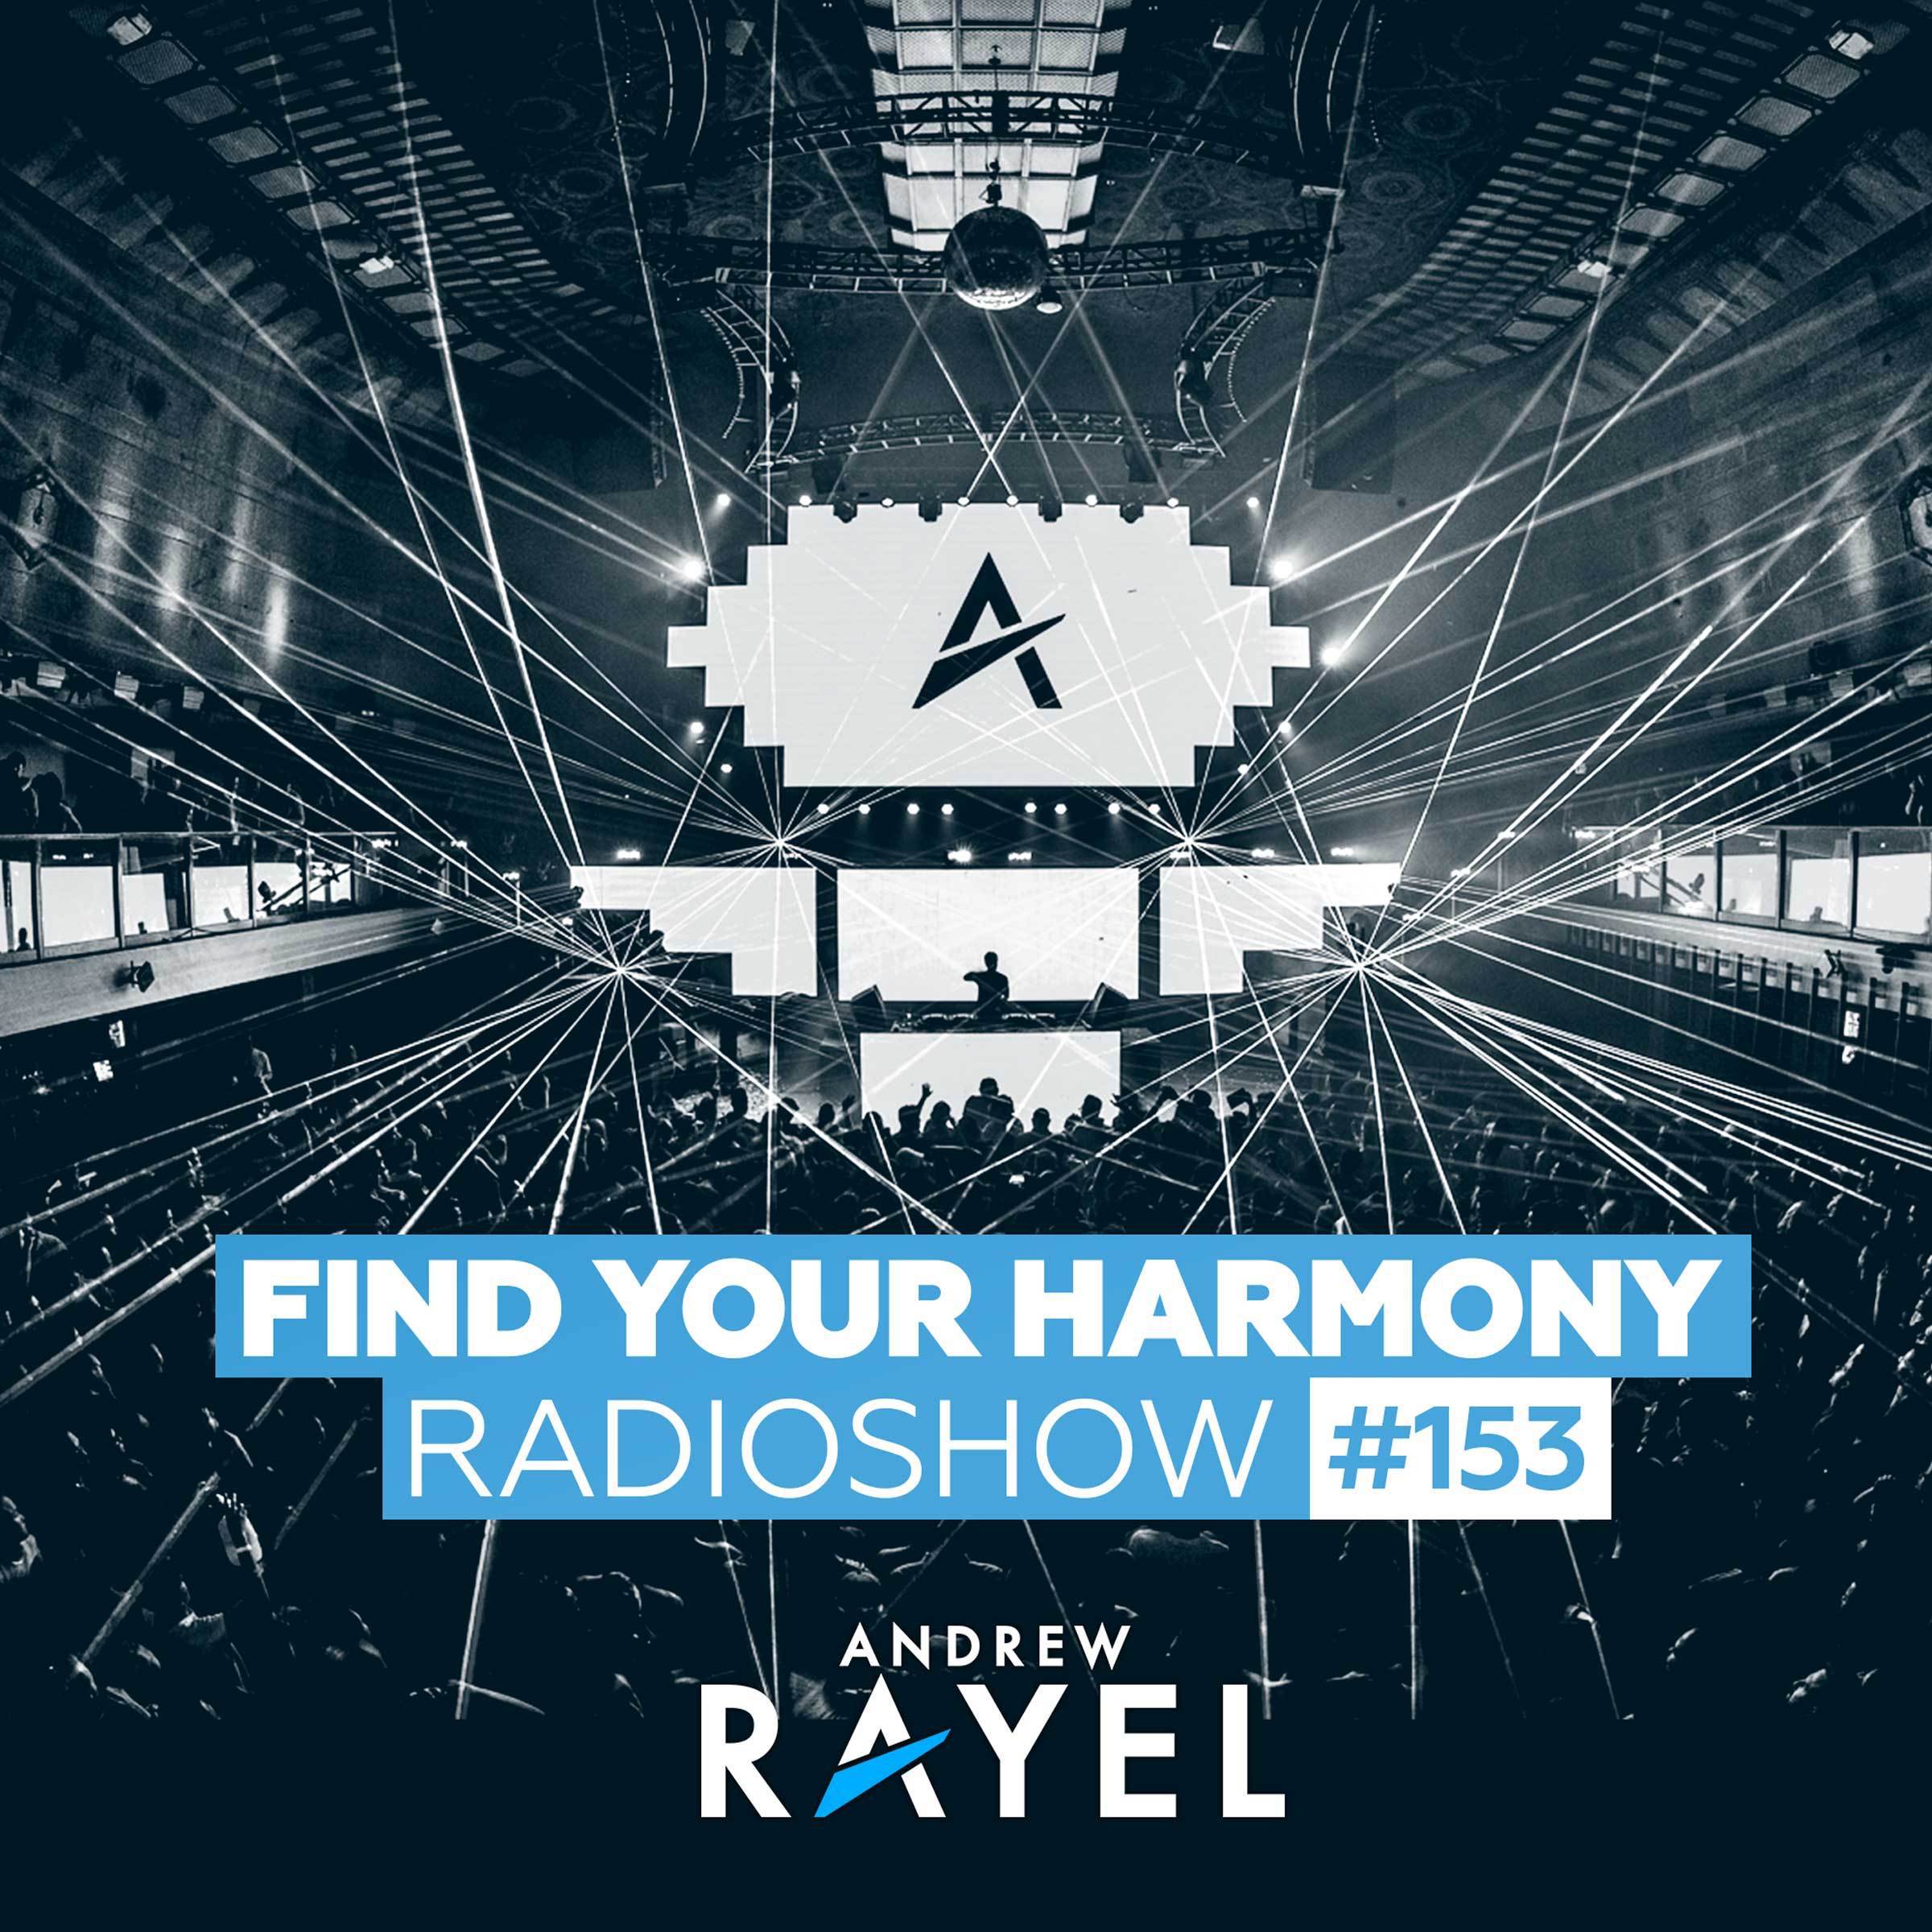 Find Your Harmony Radioshow #153专辑